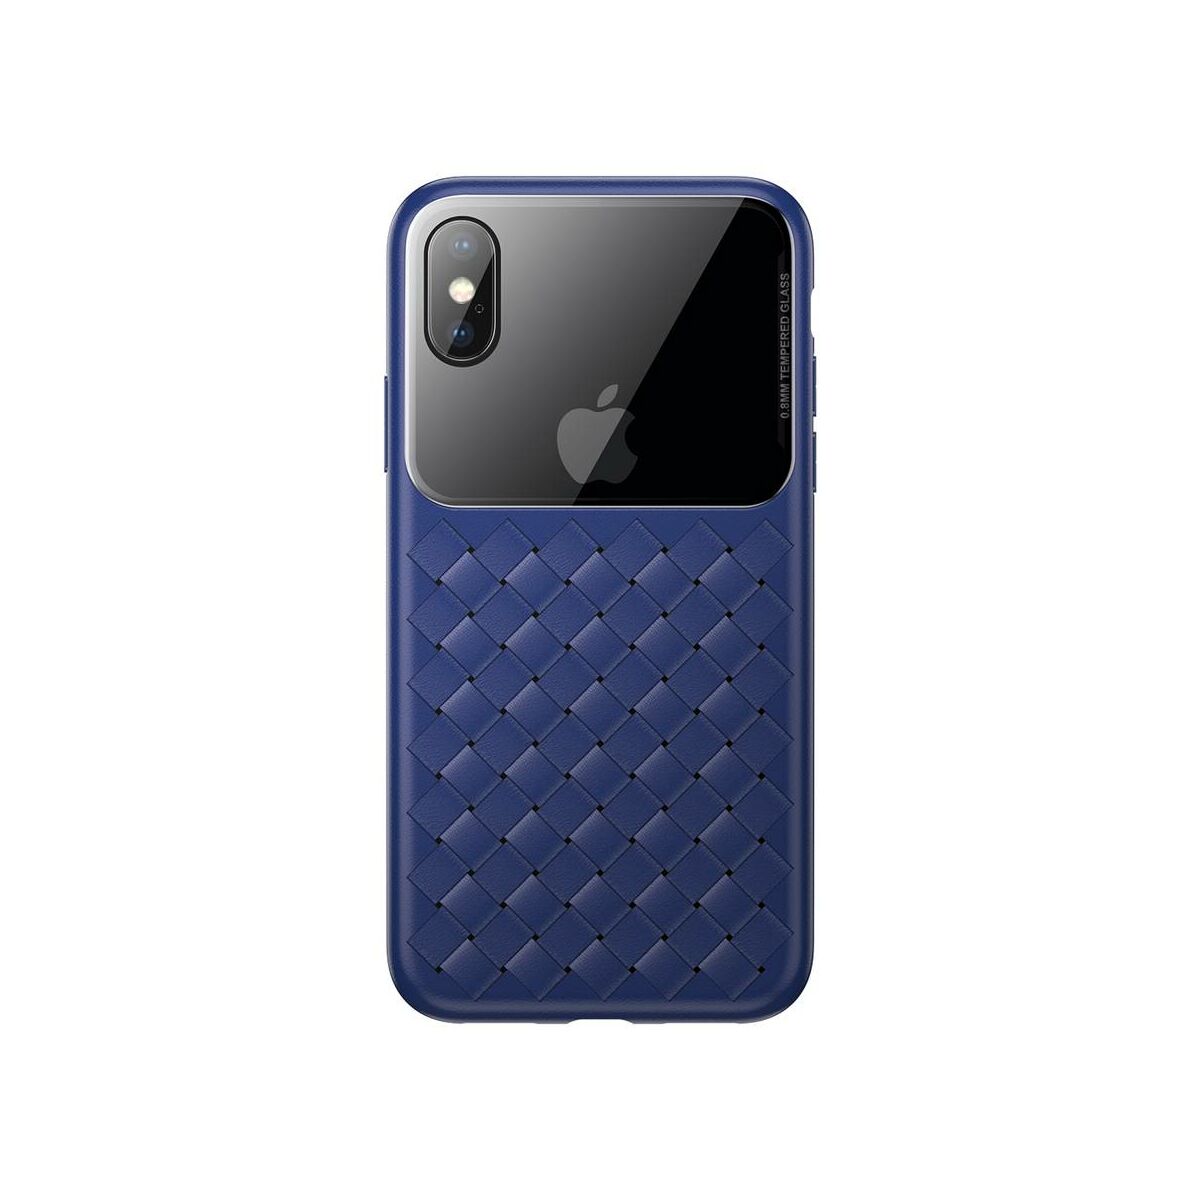 Kép 8/8 - Baseus iPhone XS üveg & tok, BV Weaving, kék (WIAPIPH58-BL03)